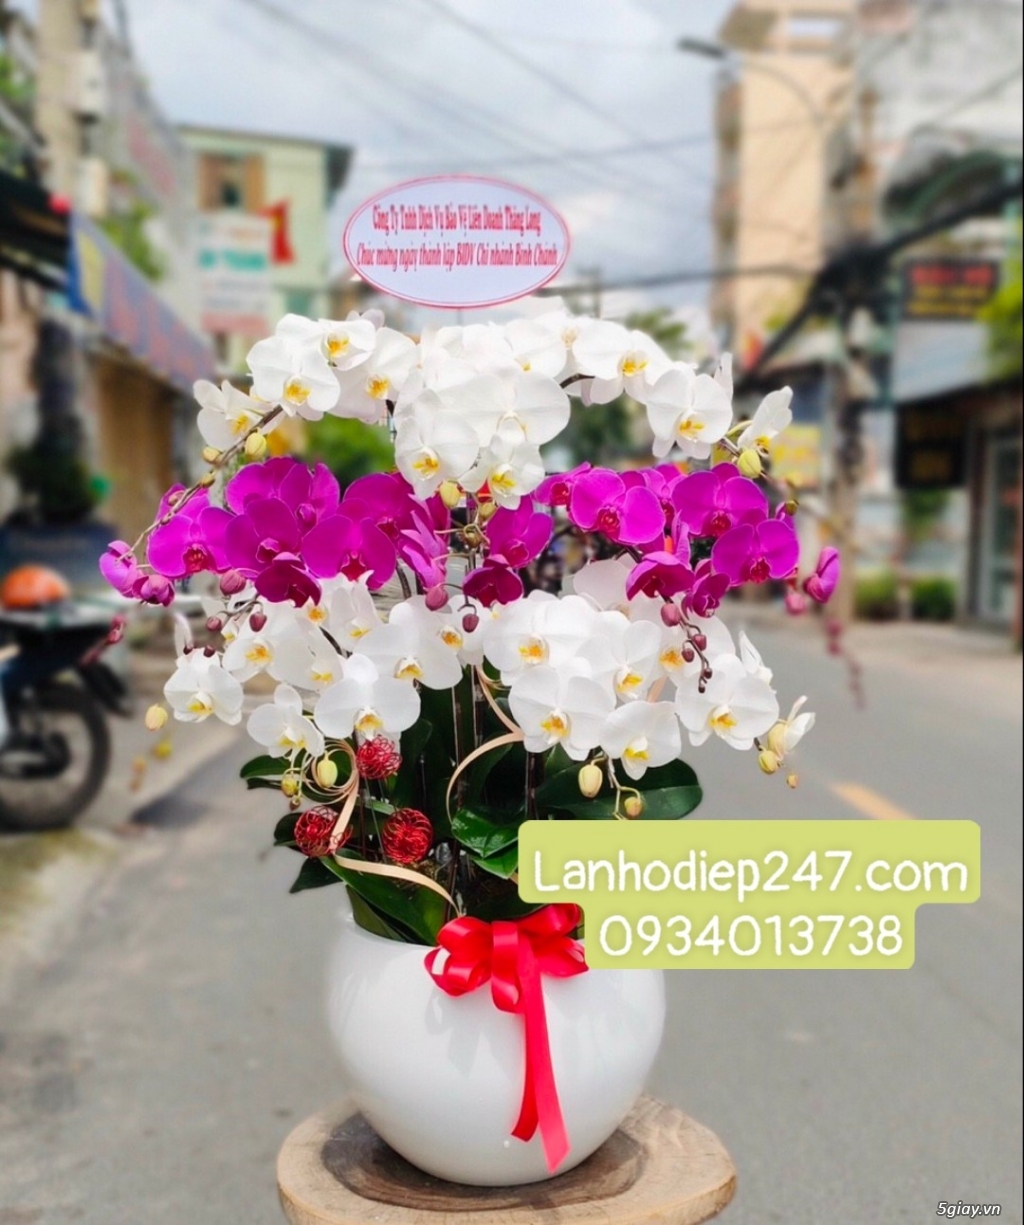 Shop Hoa Lan 247 Sài Gòn cung cấp lan hồ điệp chất lượng 0934013738 - 12